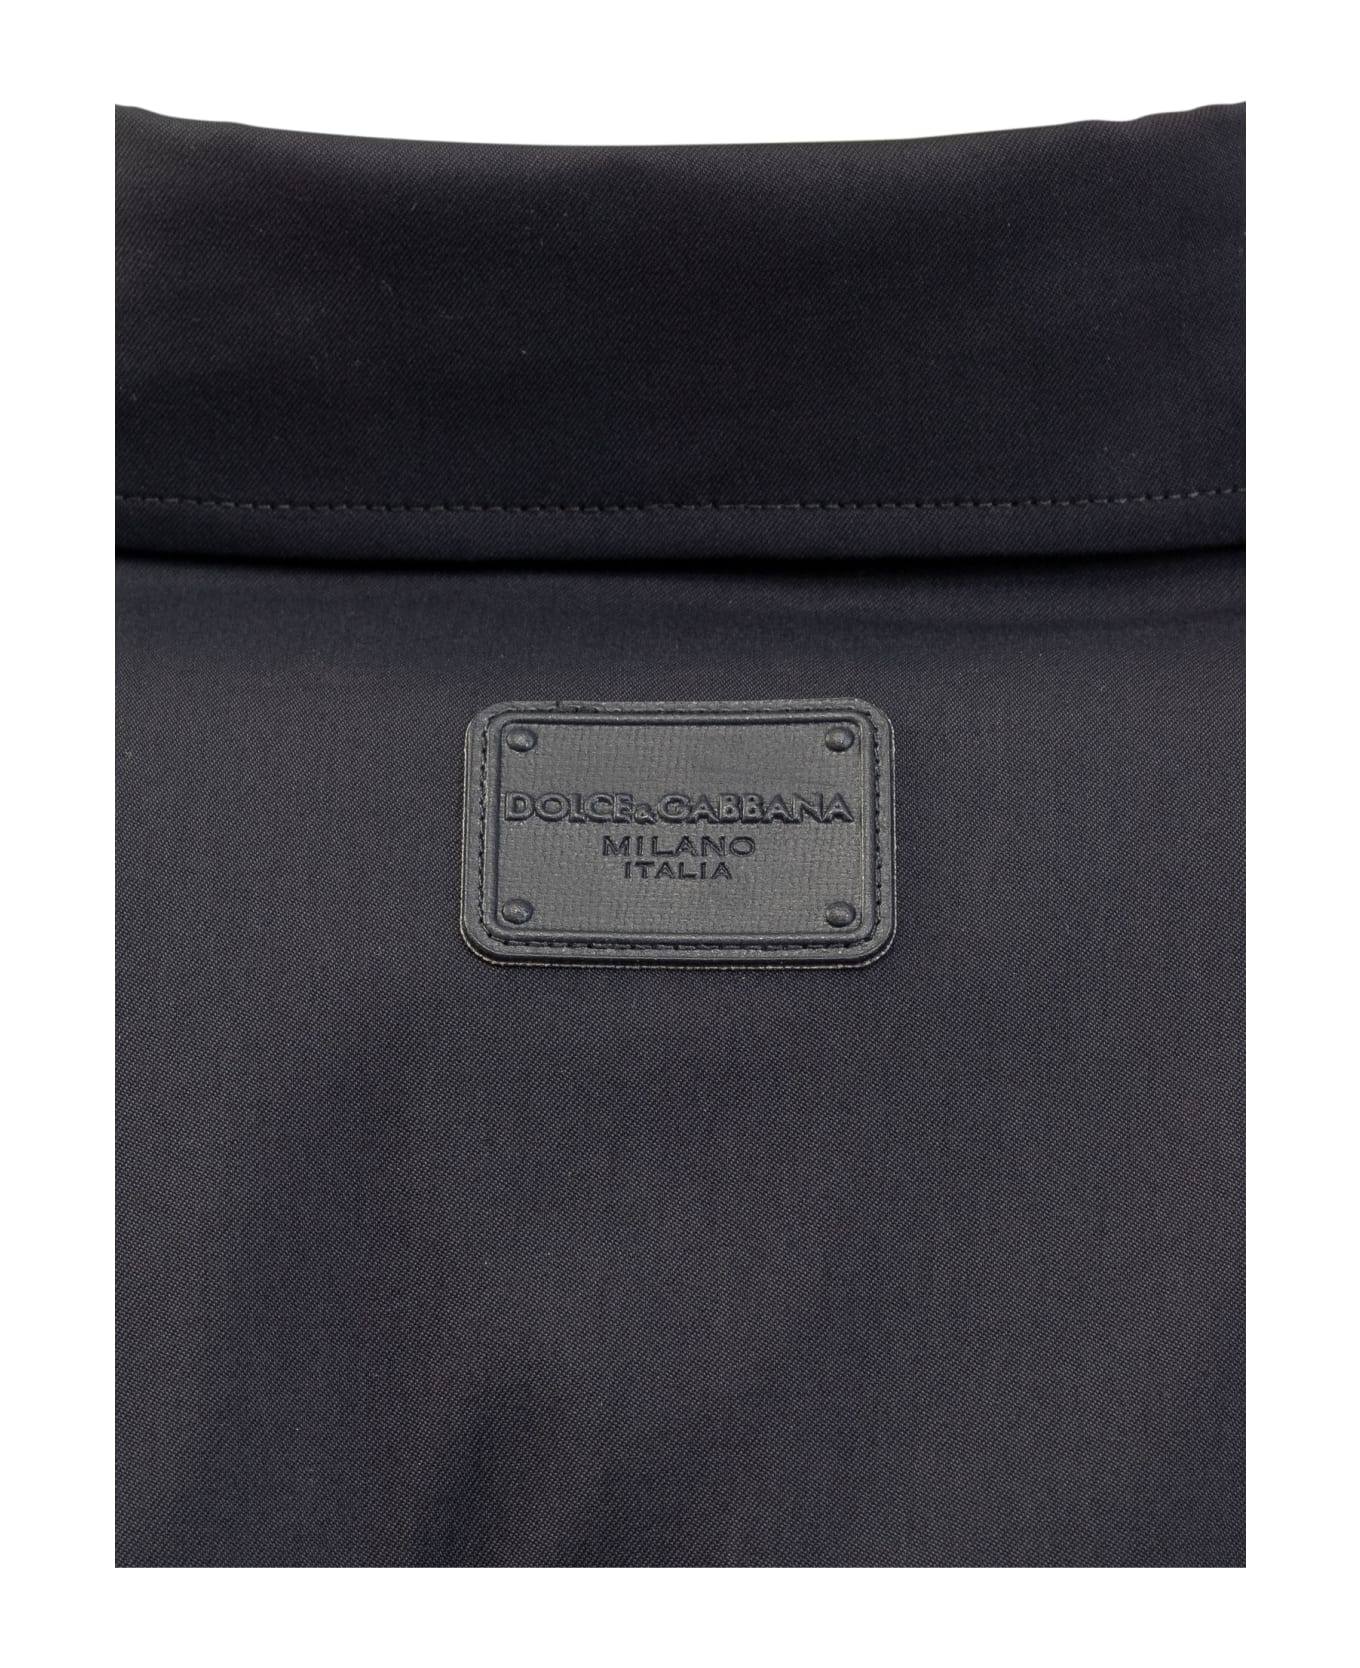 Dolce Wei & Gabbana Technical Fabric Shirt - BLU SCURISSIMO 5